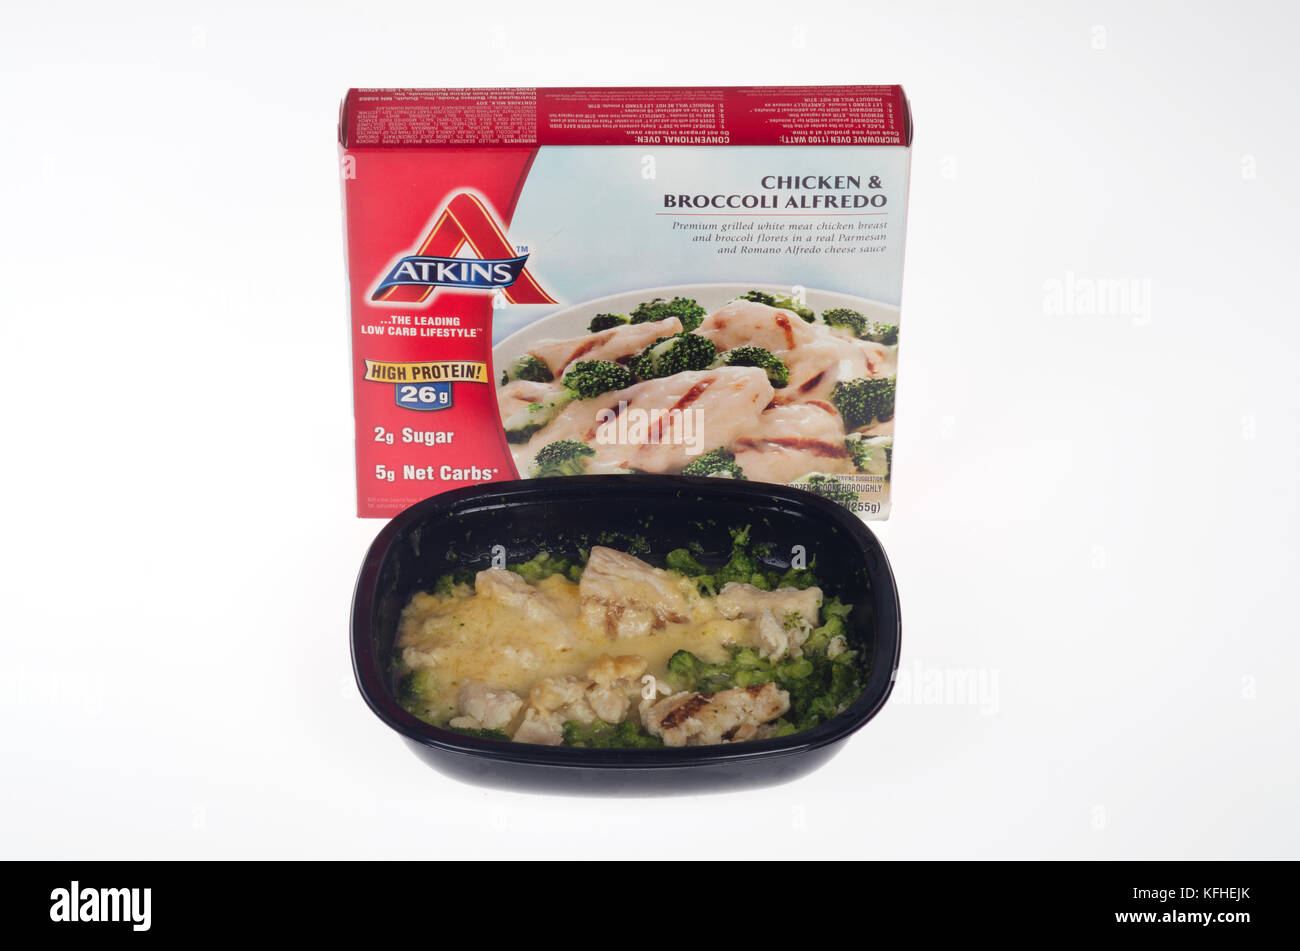 Cotto in forno a microonde Dieta Atkins pasto di pollo e broccoli con Alfredo Casella e il cibo cotto il vassoio Foto Stock